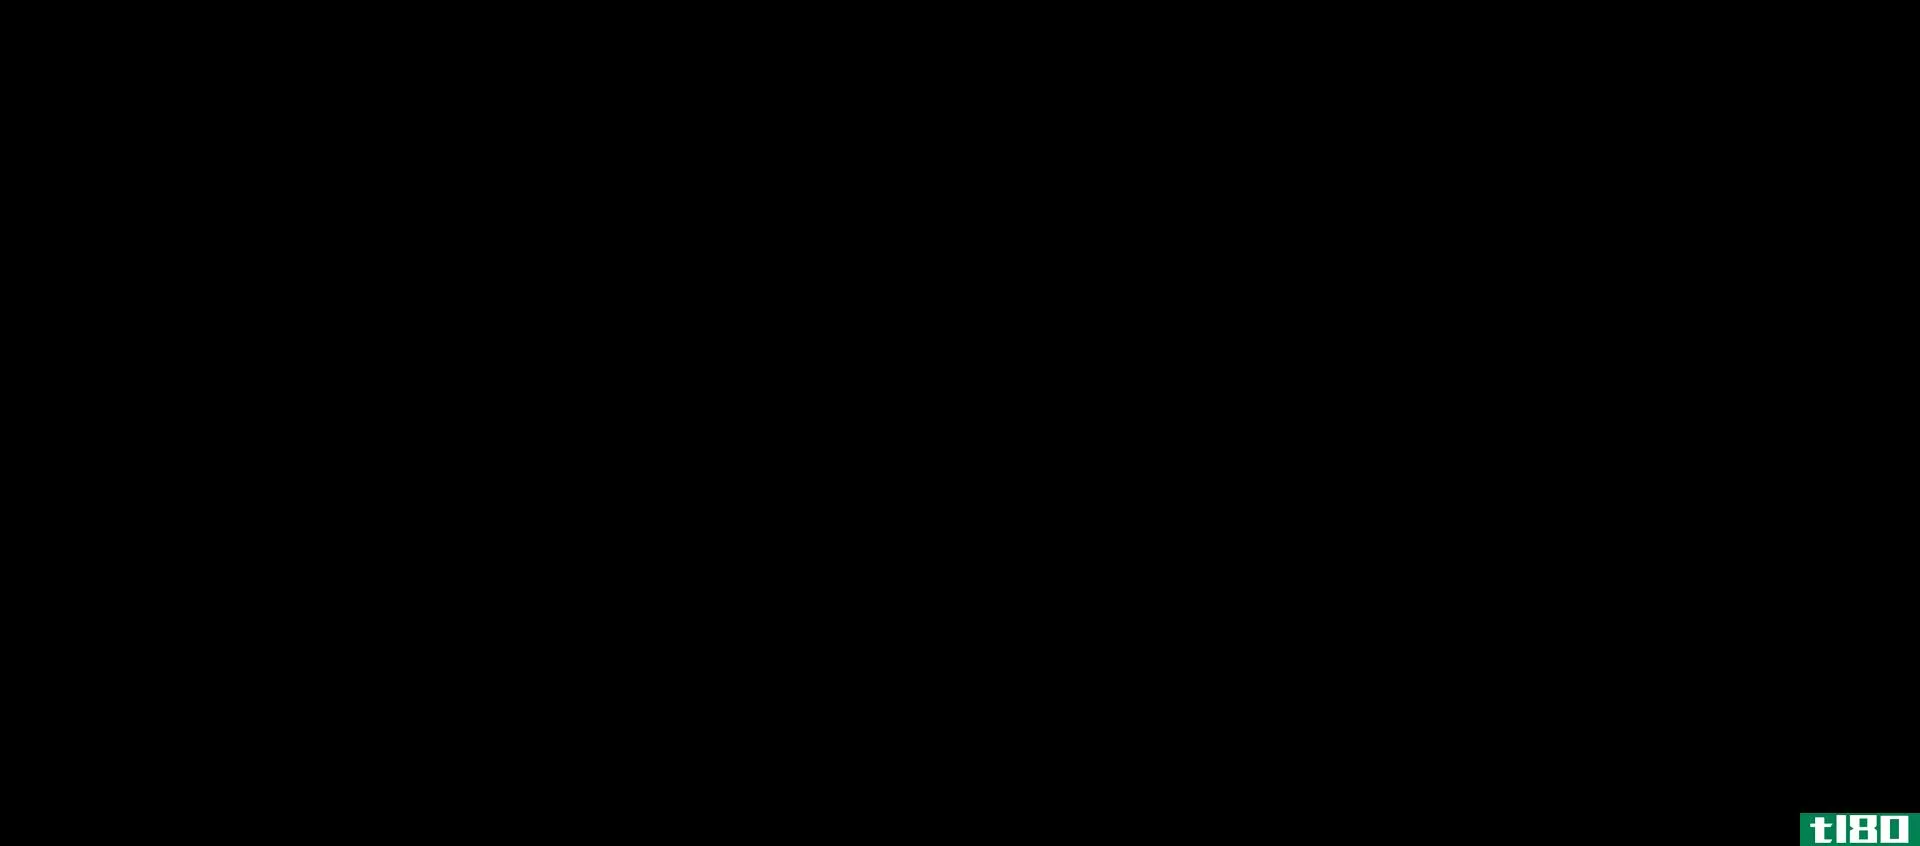 二聚化(dimerization)和聚合(polymerization)的区别